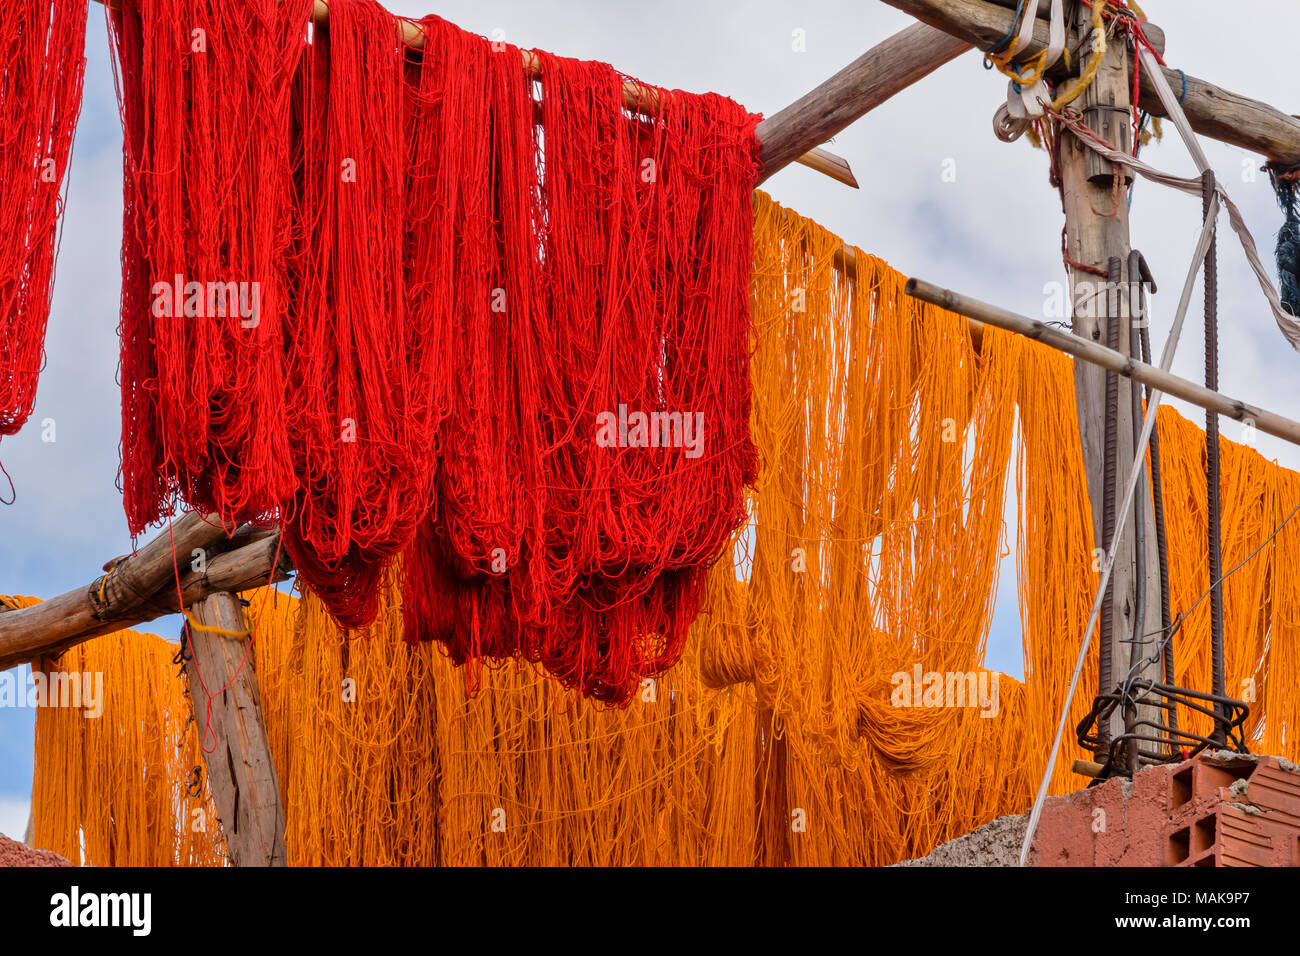 Il Marocco Marrakech Jemaa el Fna MEDINA SOUK matasse di lana di colore rosso e giallo di lana colorati appesi da poli e di essiccazione al sole Foto Stock